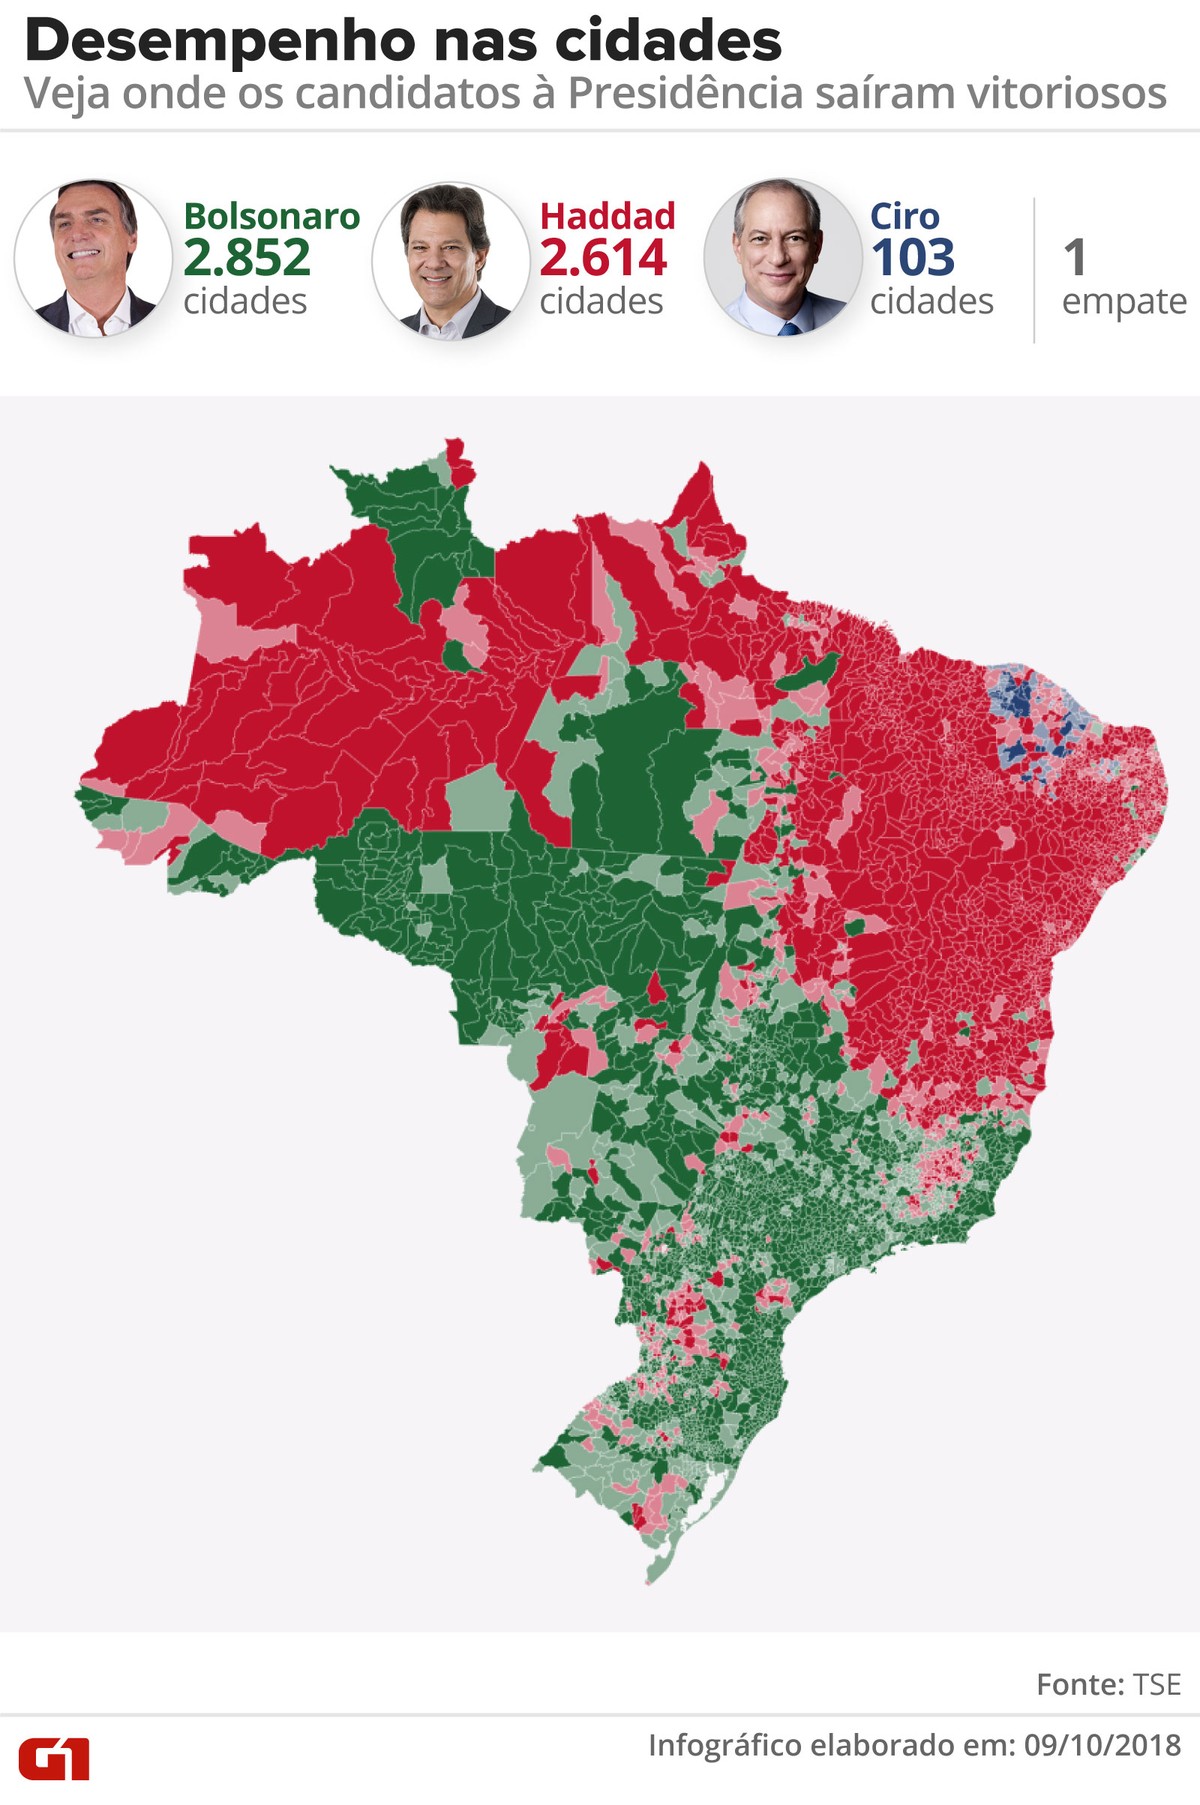 Bolsonaro Vence Em Cidades Haddad Em E Ciro Em Elei O Em N Meros Elei Es